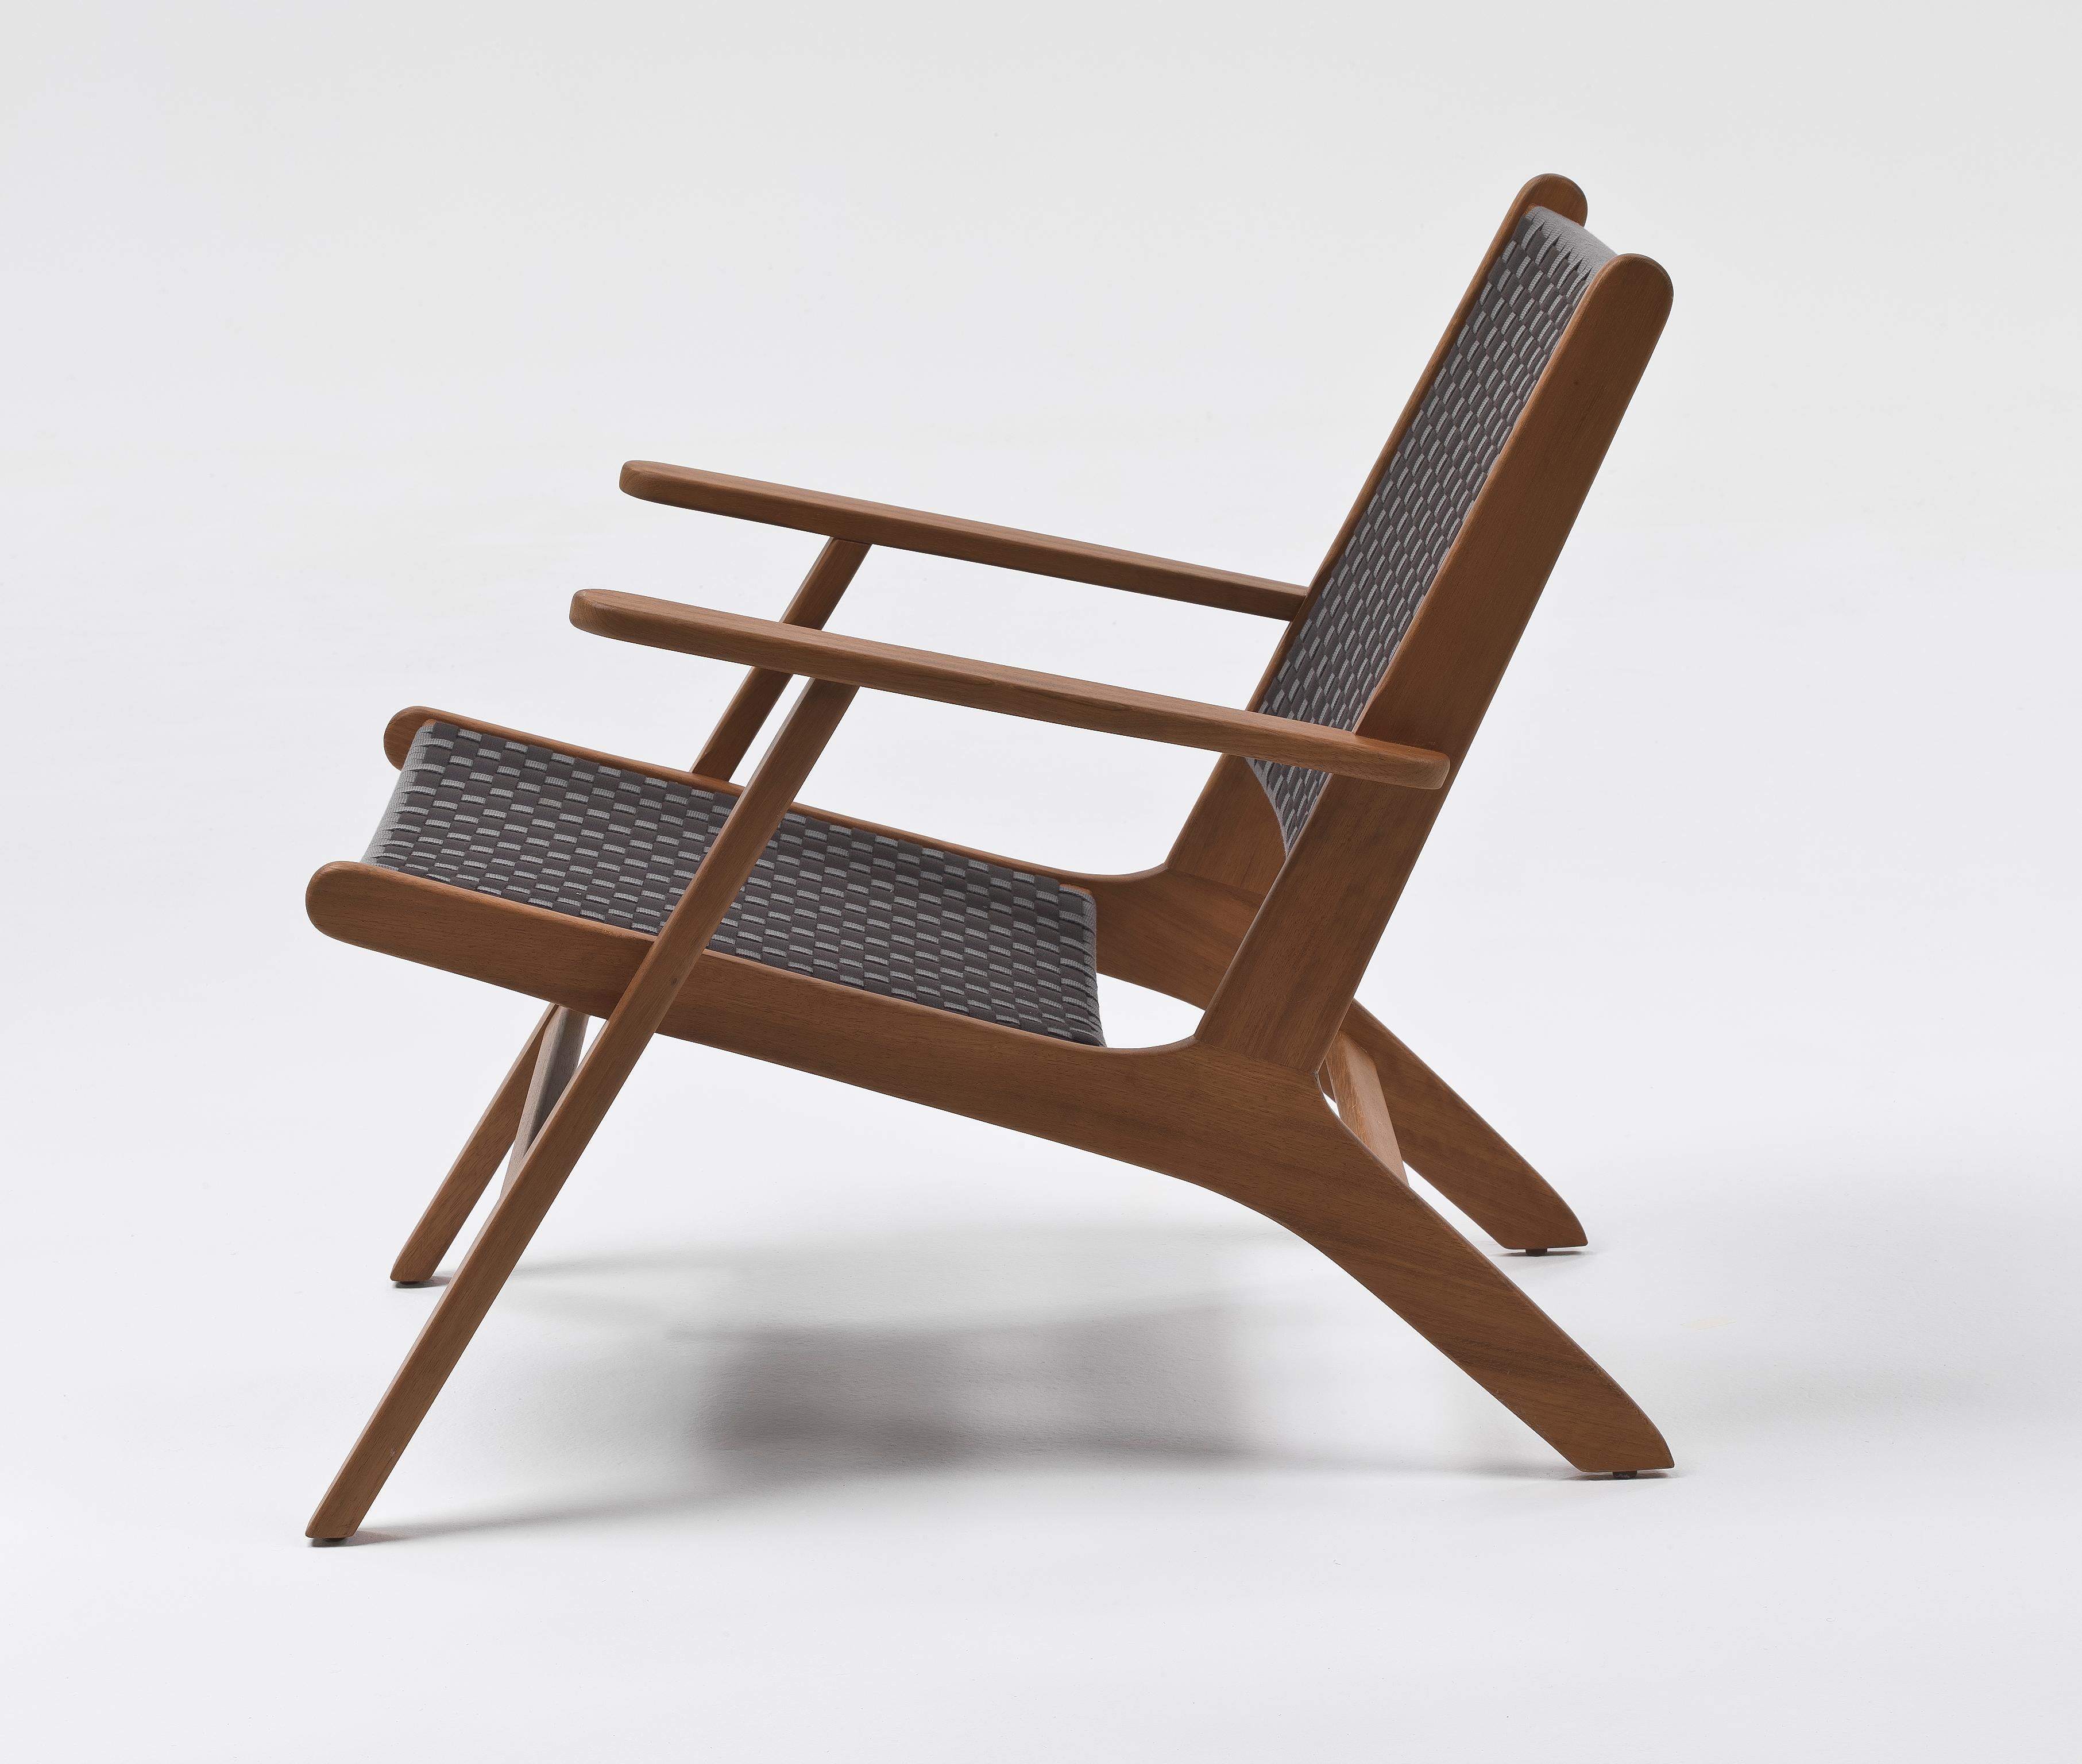 Sorgfältig von Hand aus massivem Iroko-Holz gefertigt, ist dieser Sessel ein Symbol für die Liebe zum Detail und das Engagement für Qualität.

Das ausgeprägte Webmuster verleiht ihm nicht nur einen Hauch von Eleganz, sondern sorgt auch für